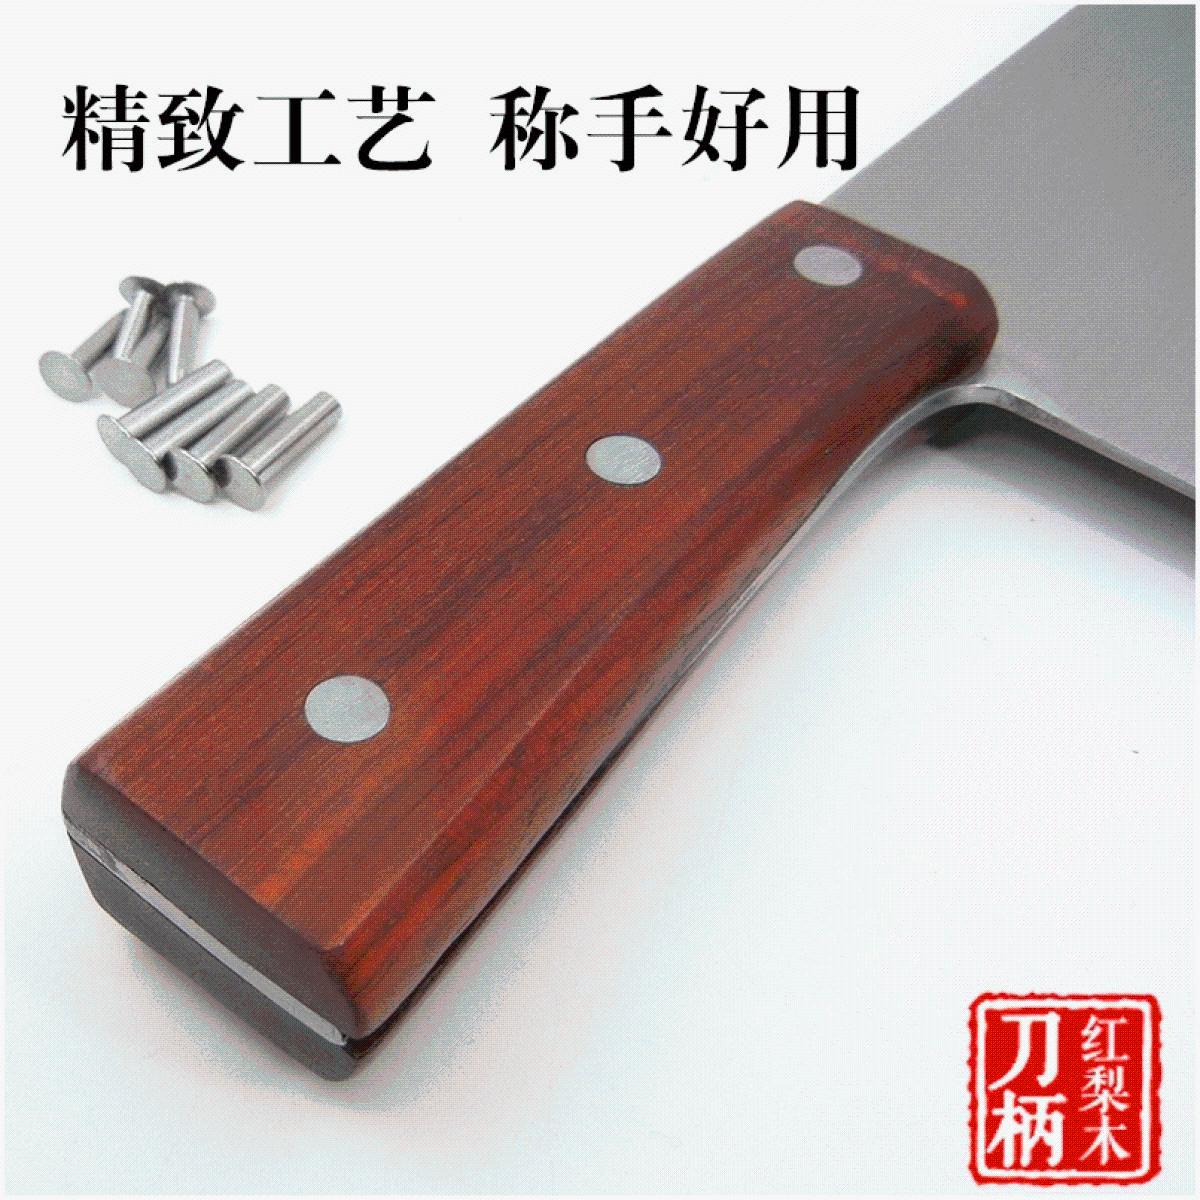 菜刀把刀柄配件固定菜刀柄手柄铆钉实木自制材料刀把替换木质